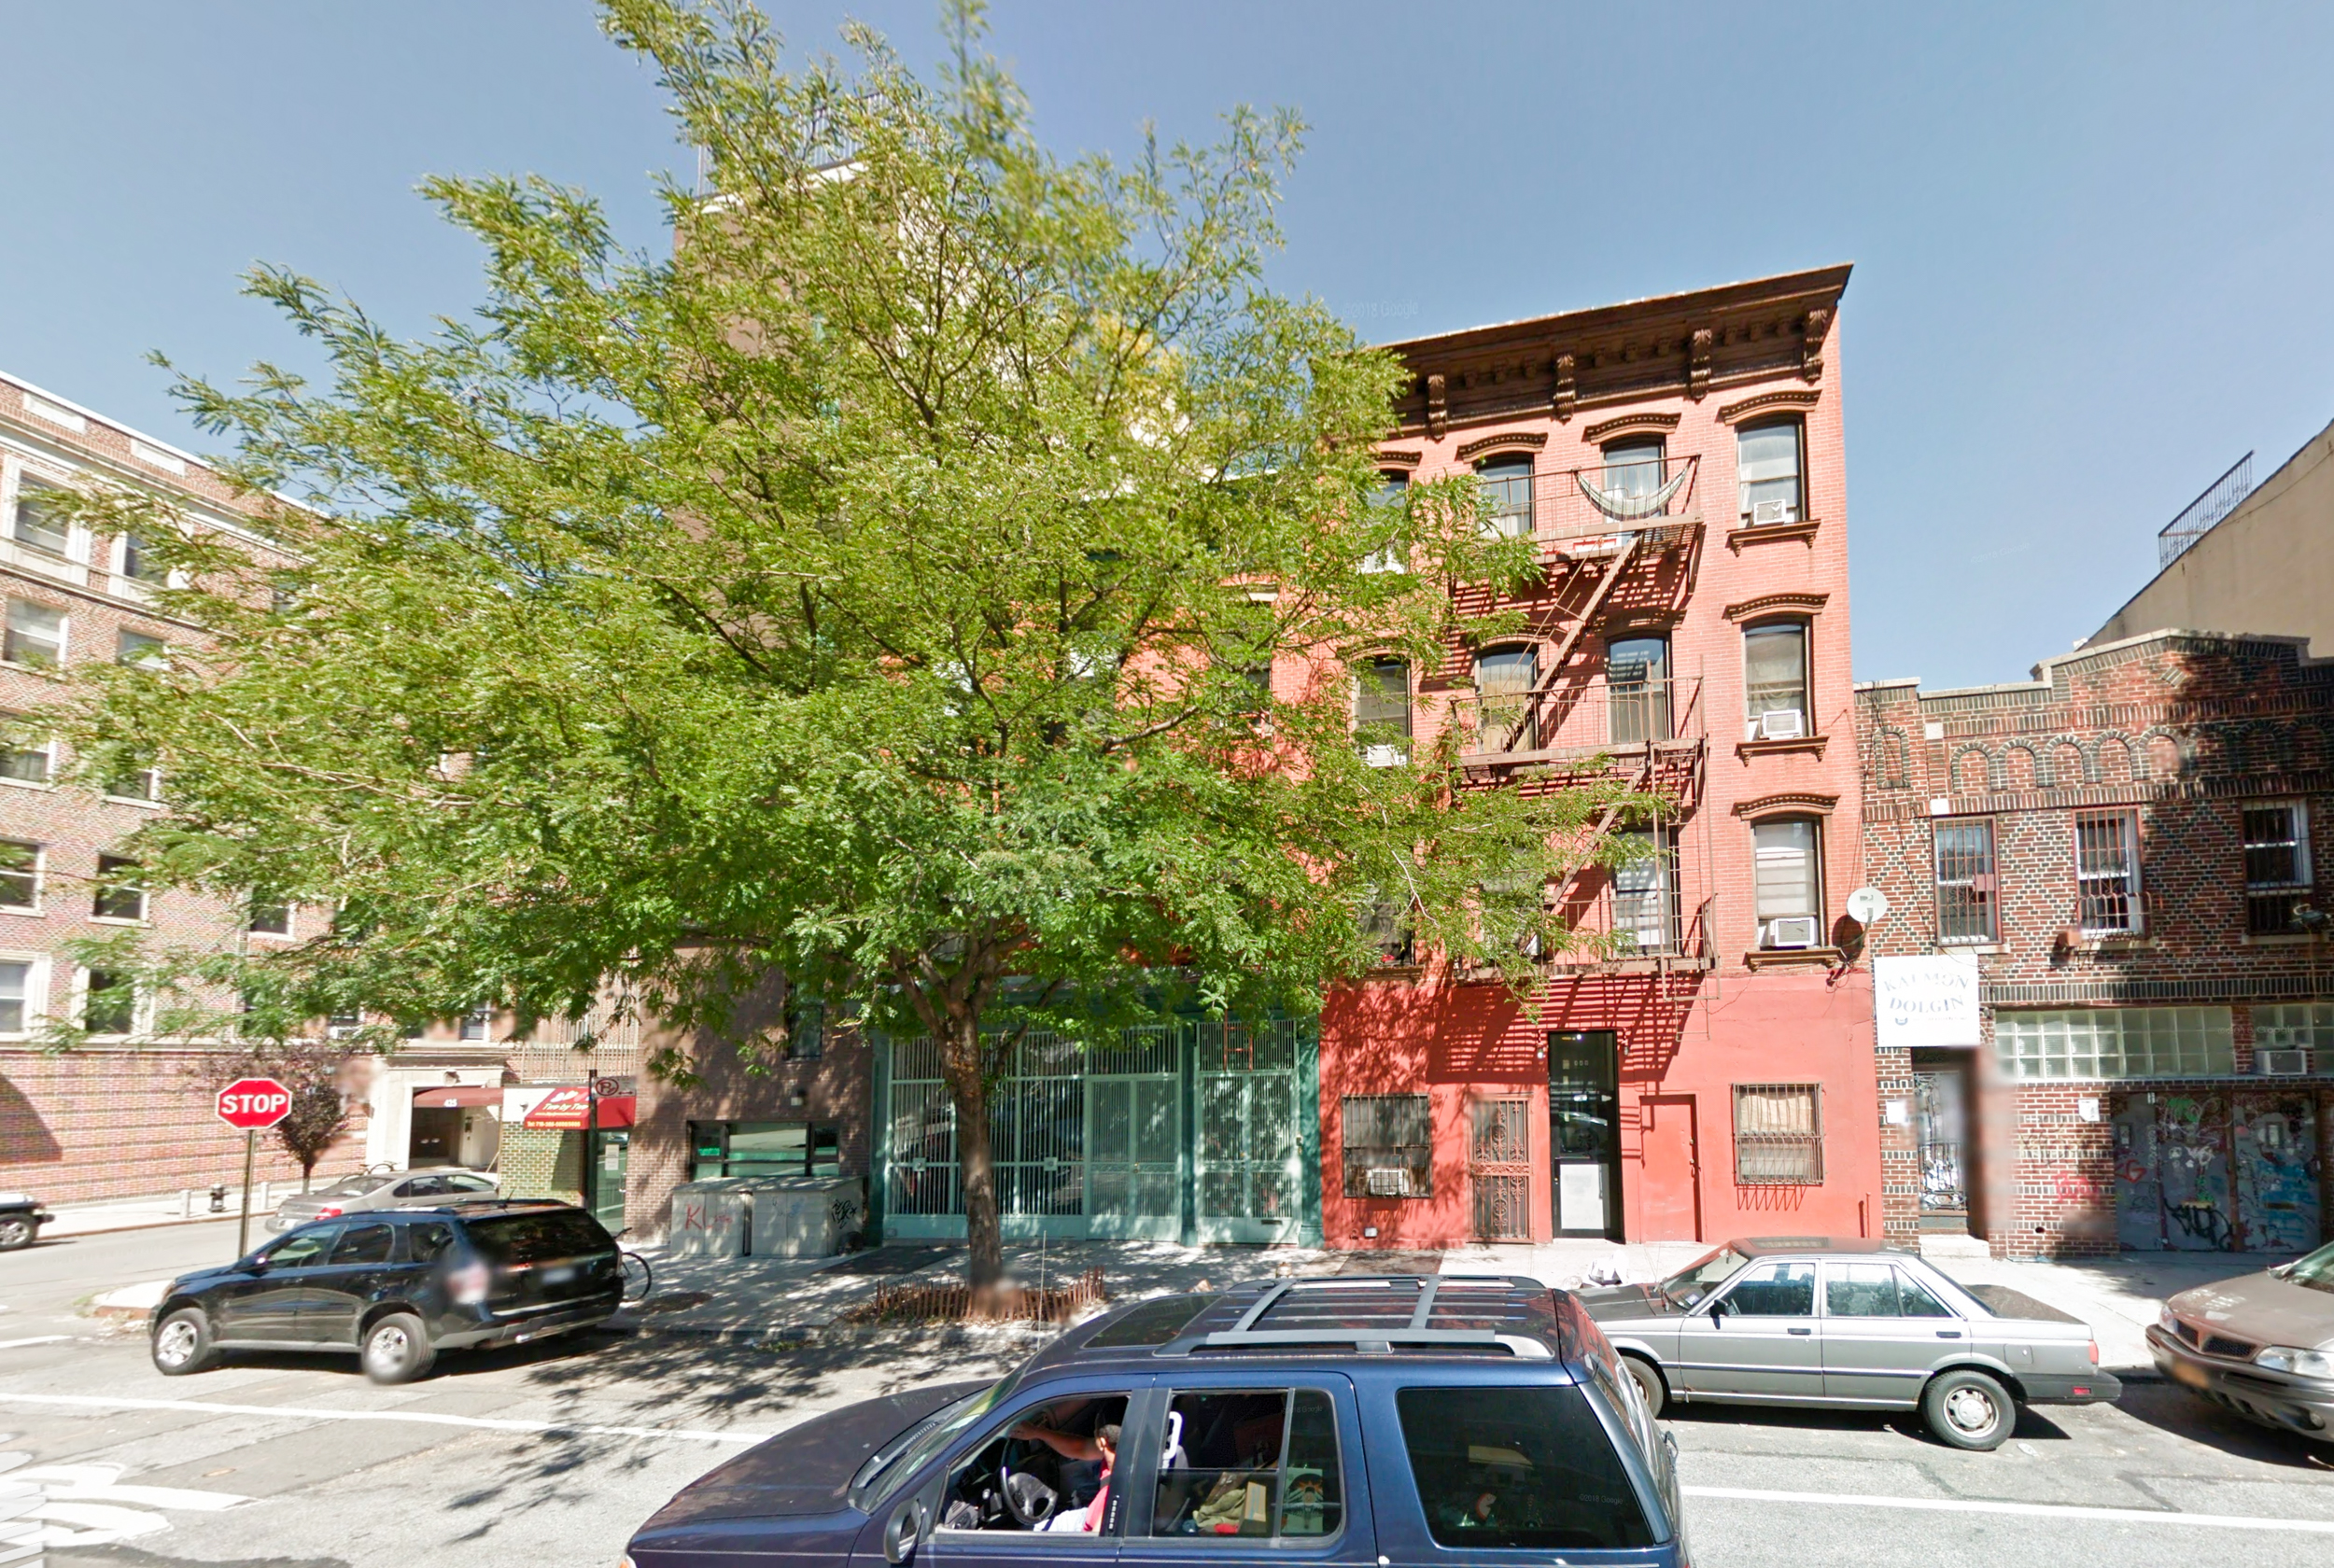 445 Grand Avenue, via Google Maps